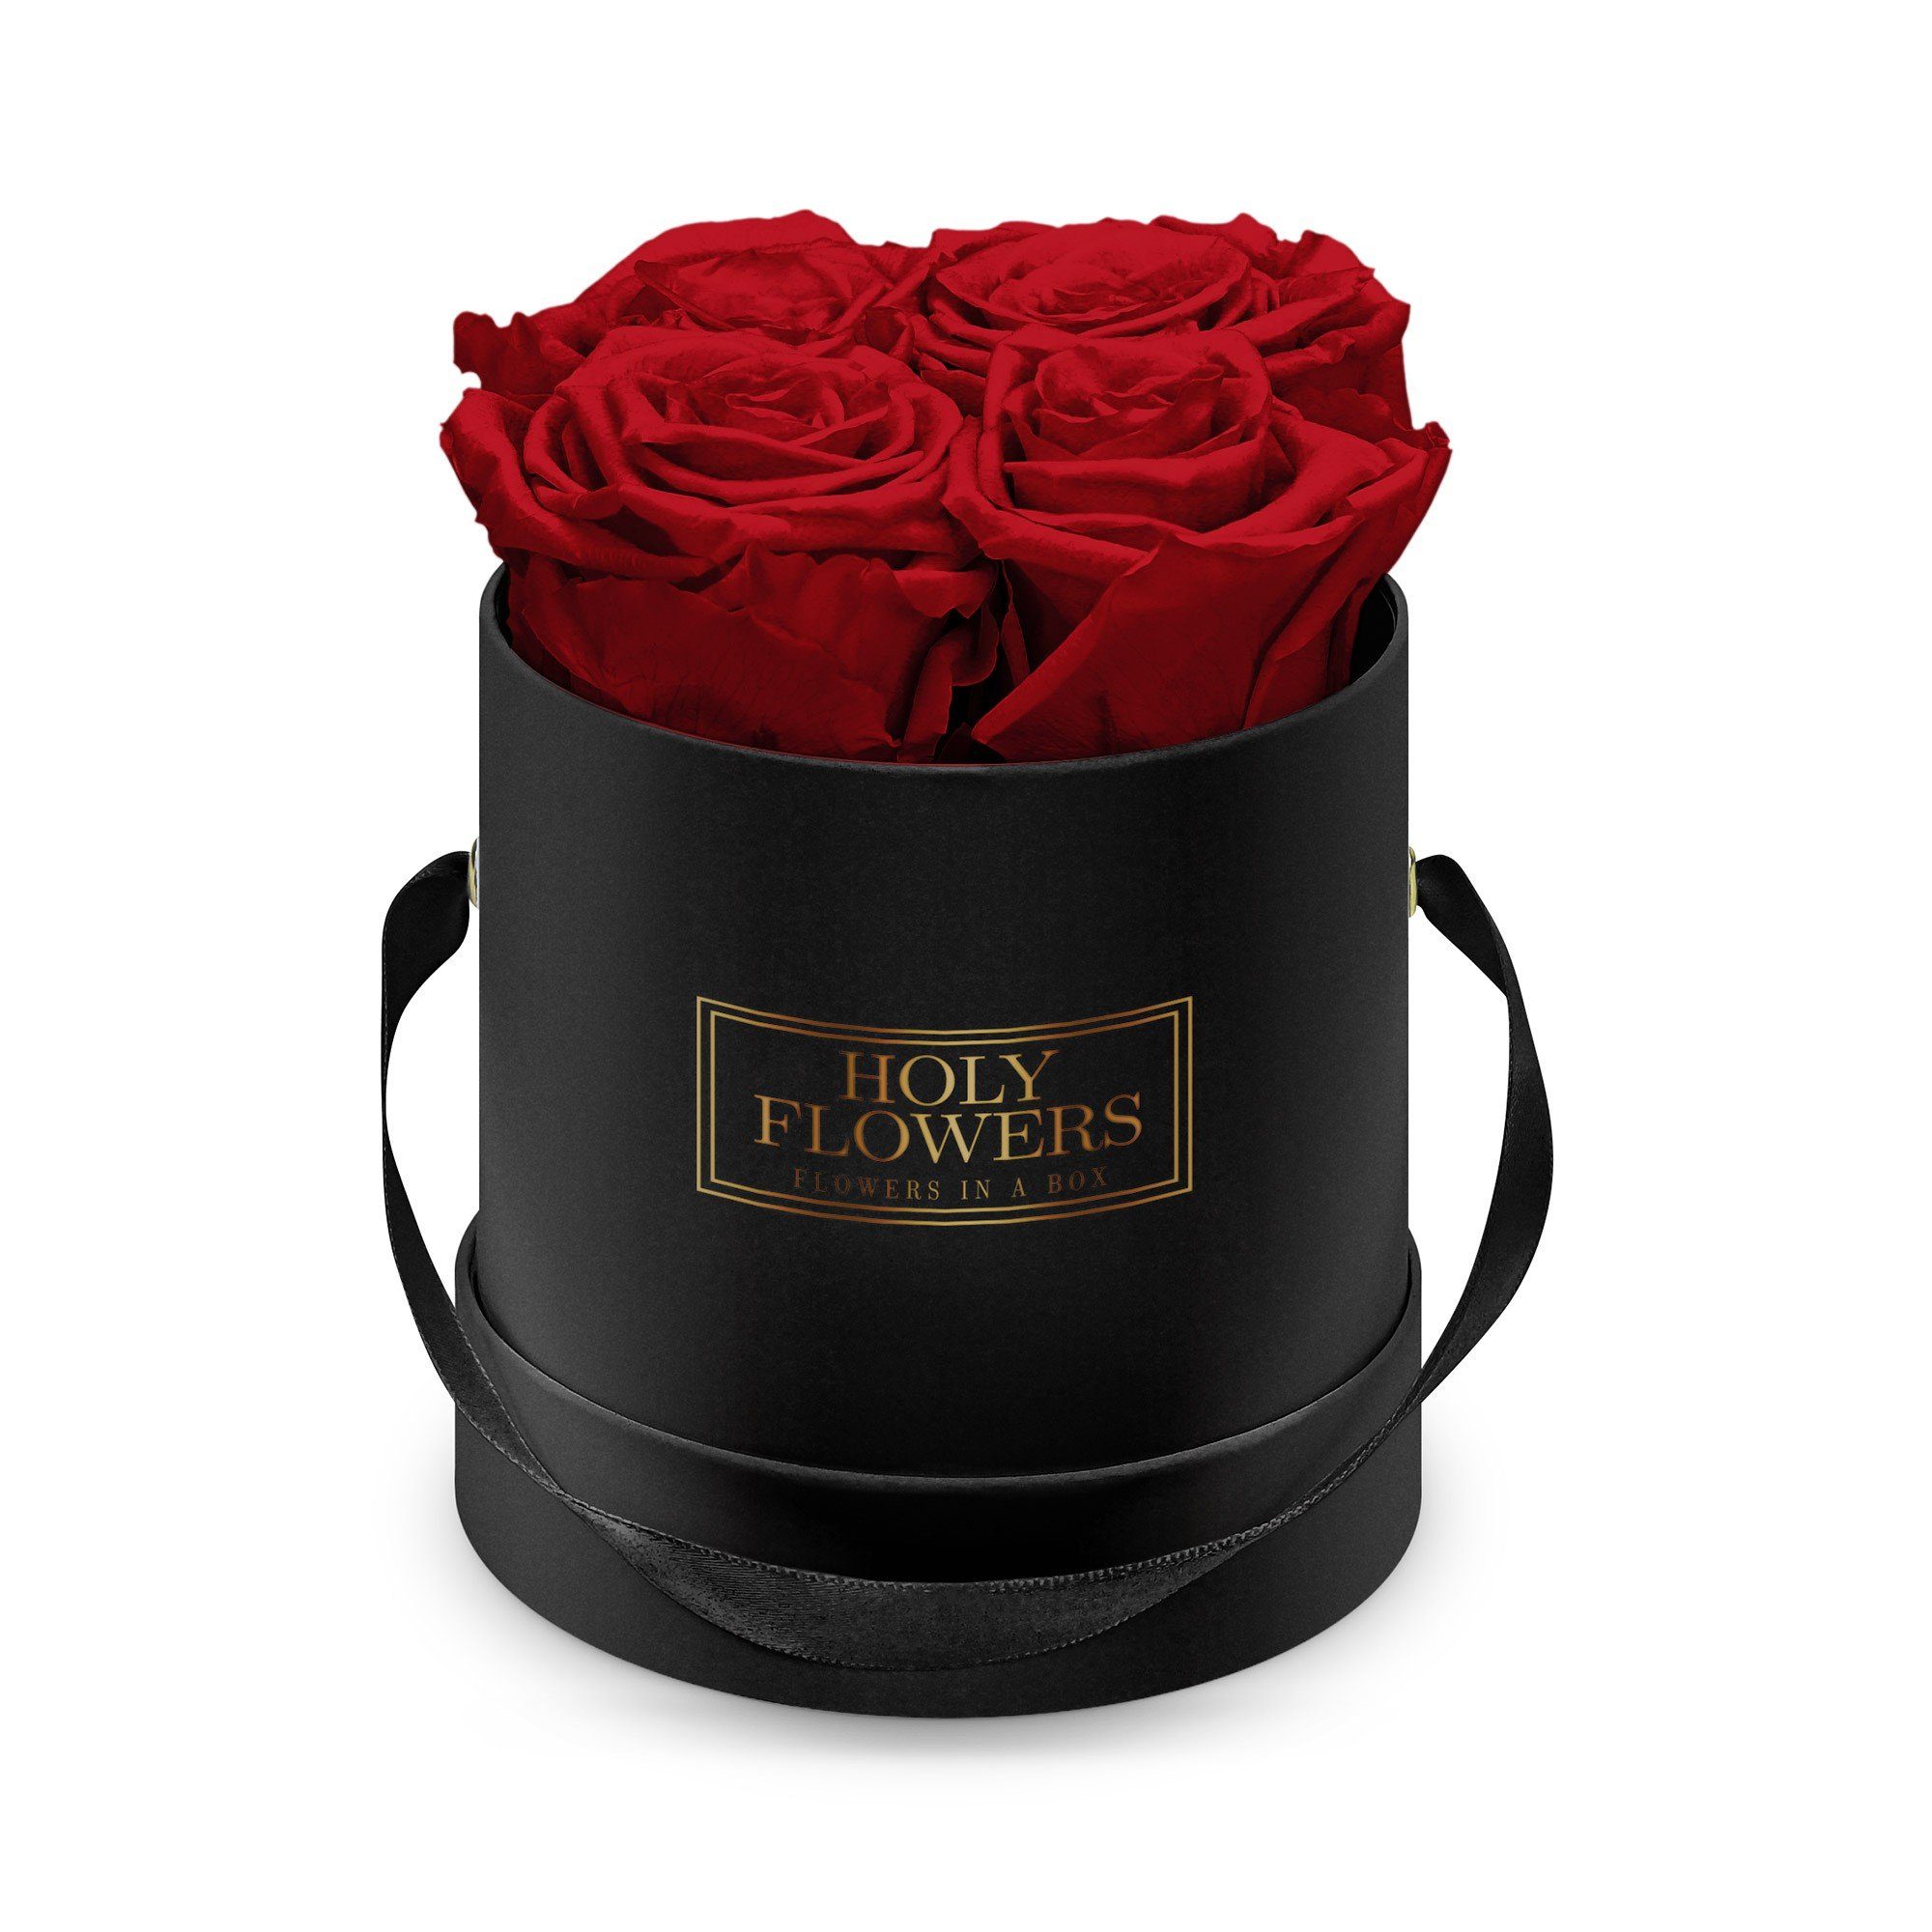 Kunstblume Runde Rosenbox in schwarz mit 4-5 Infinity Rosen I 3 Jahre haltbar I Echte, duftende konservierte Blumen I by Raul Richter Infinity Rose, Holy Flowers, Höhe 11 cm Heritage Red